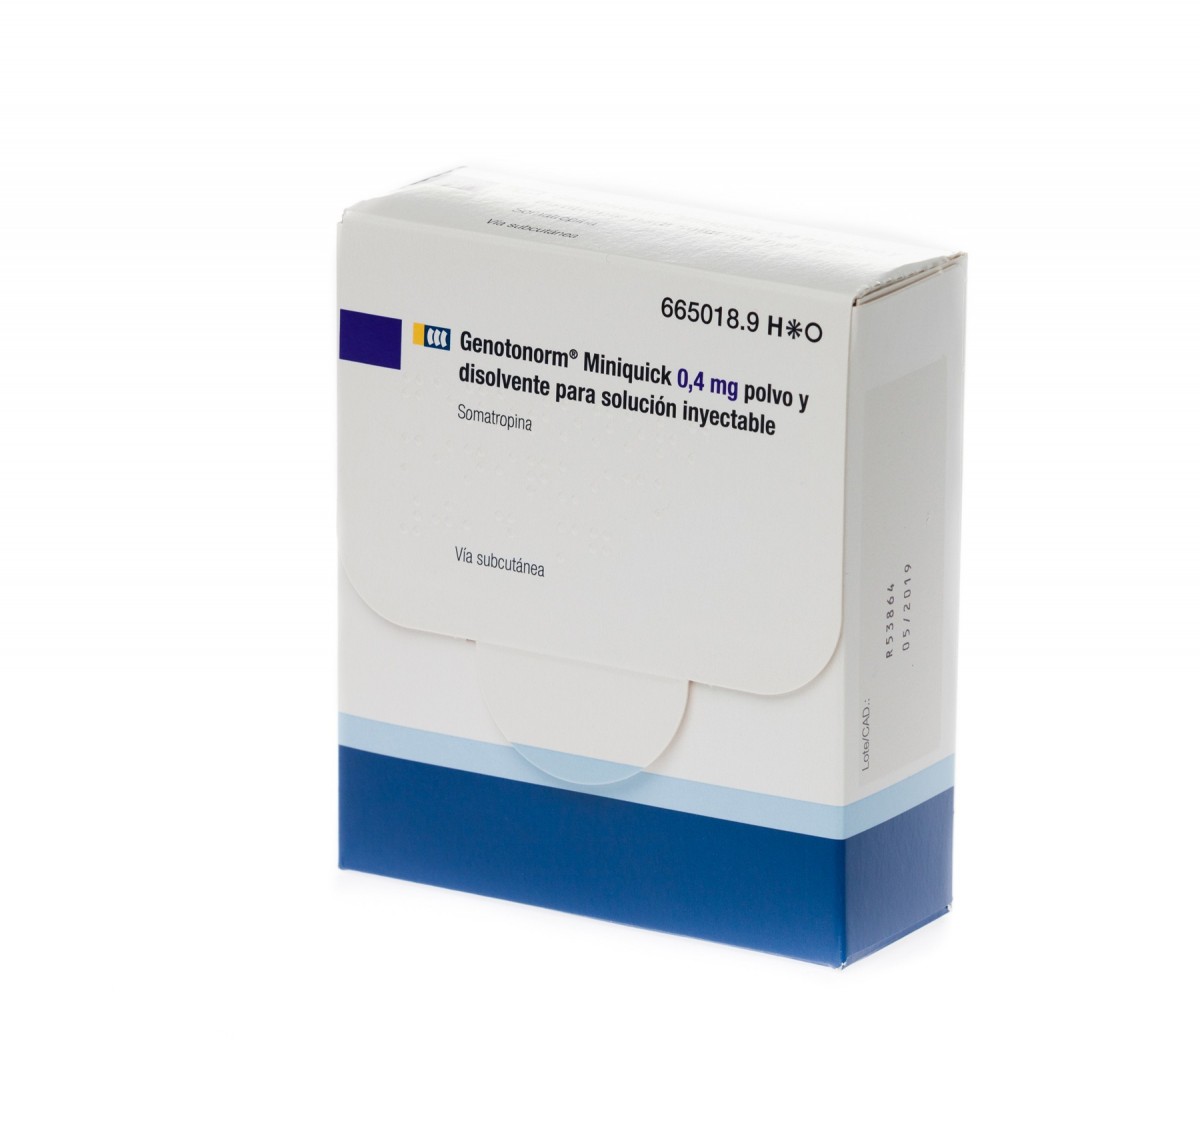 GENOTONORM MINIQUICK 0,4 mg POLVO Y DISOLVENTE PARA SOLUCION INYECTABLE 7 viales de doble cámara fotografía del envase.